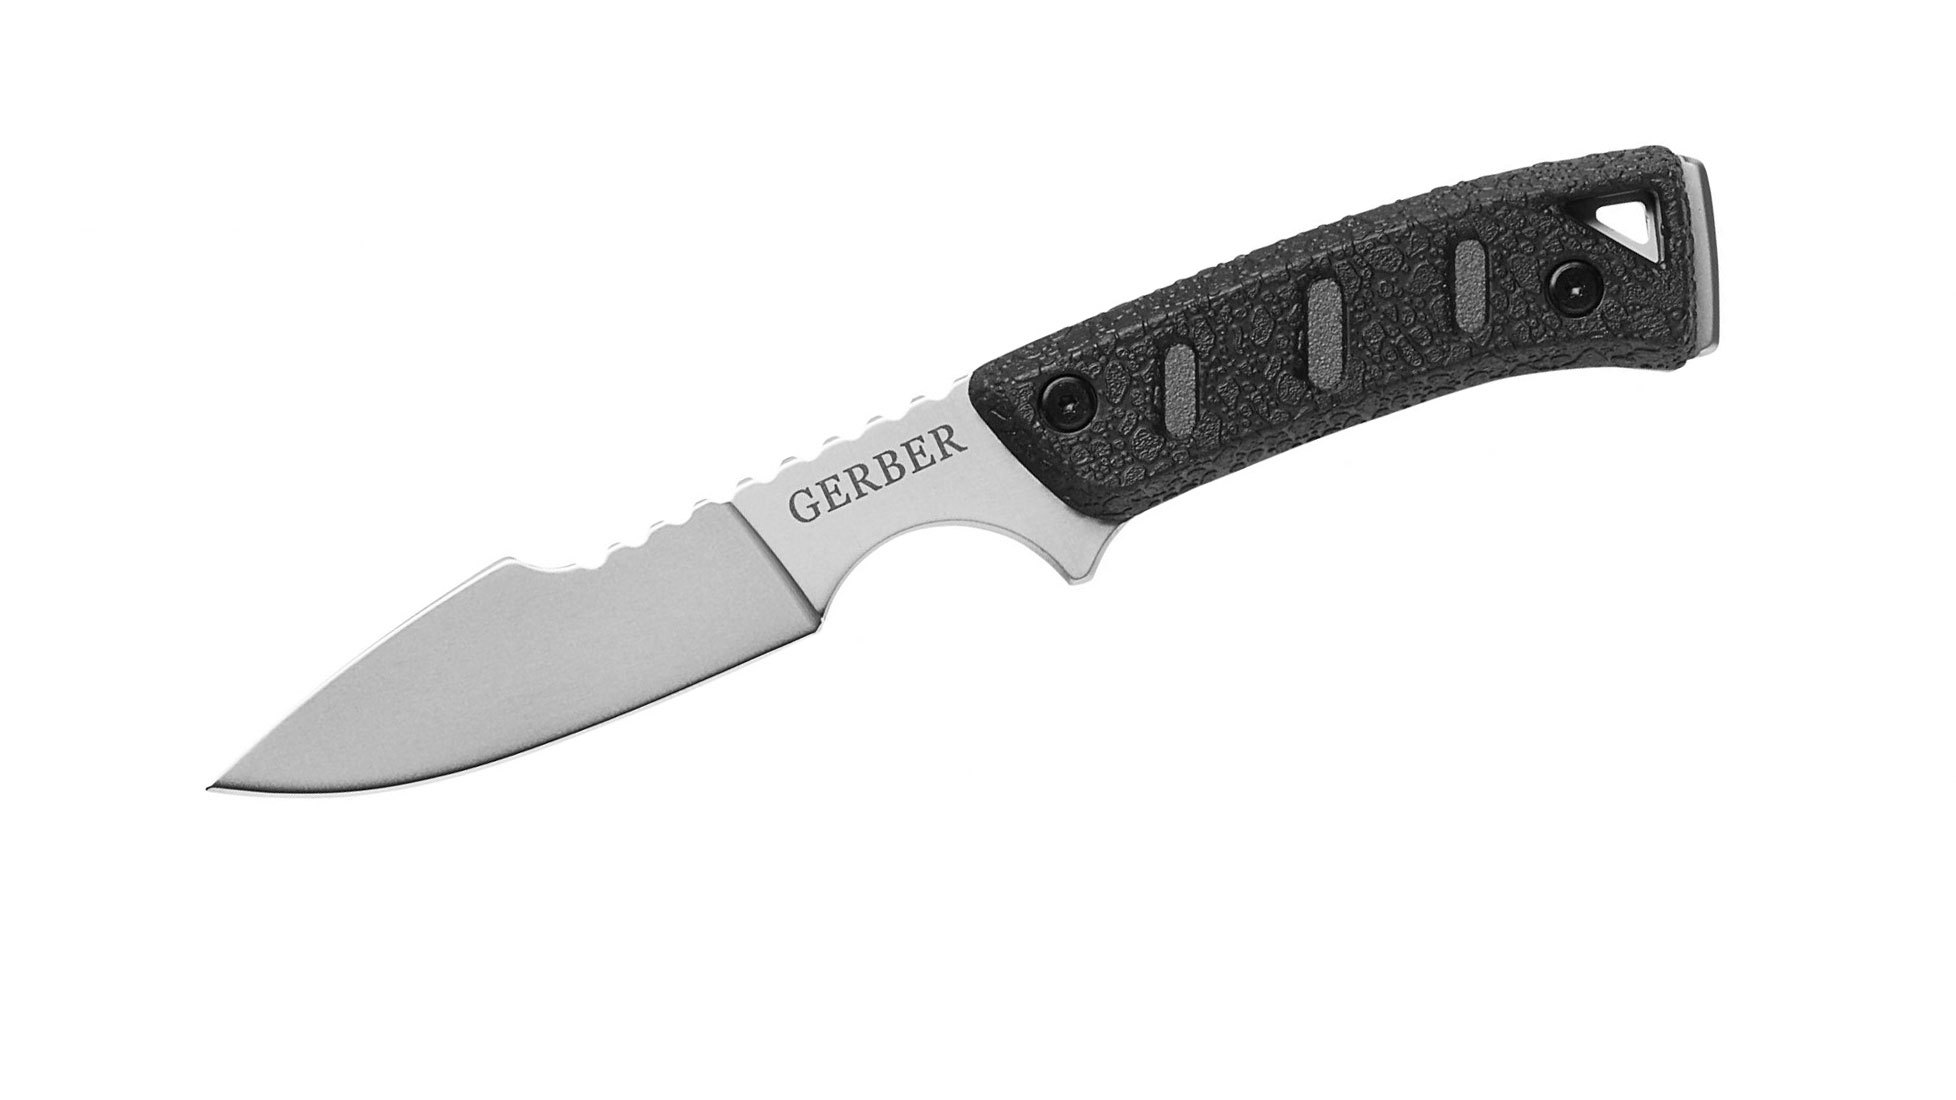 фото Нож с фиксированным клинком gerber metolius caper, сталь 420hc, рукоять g10